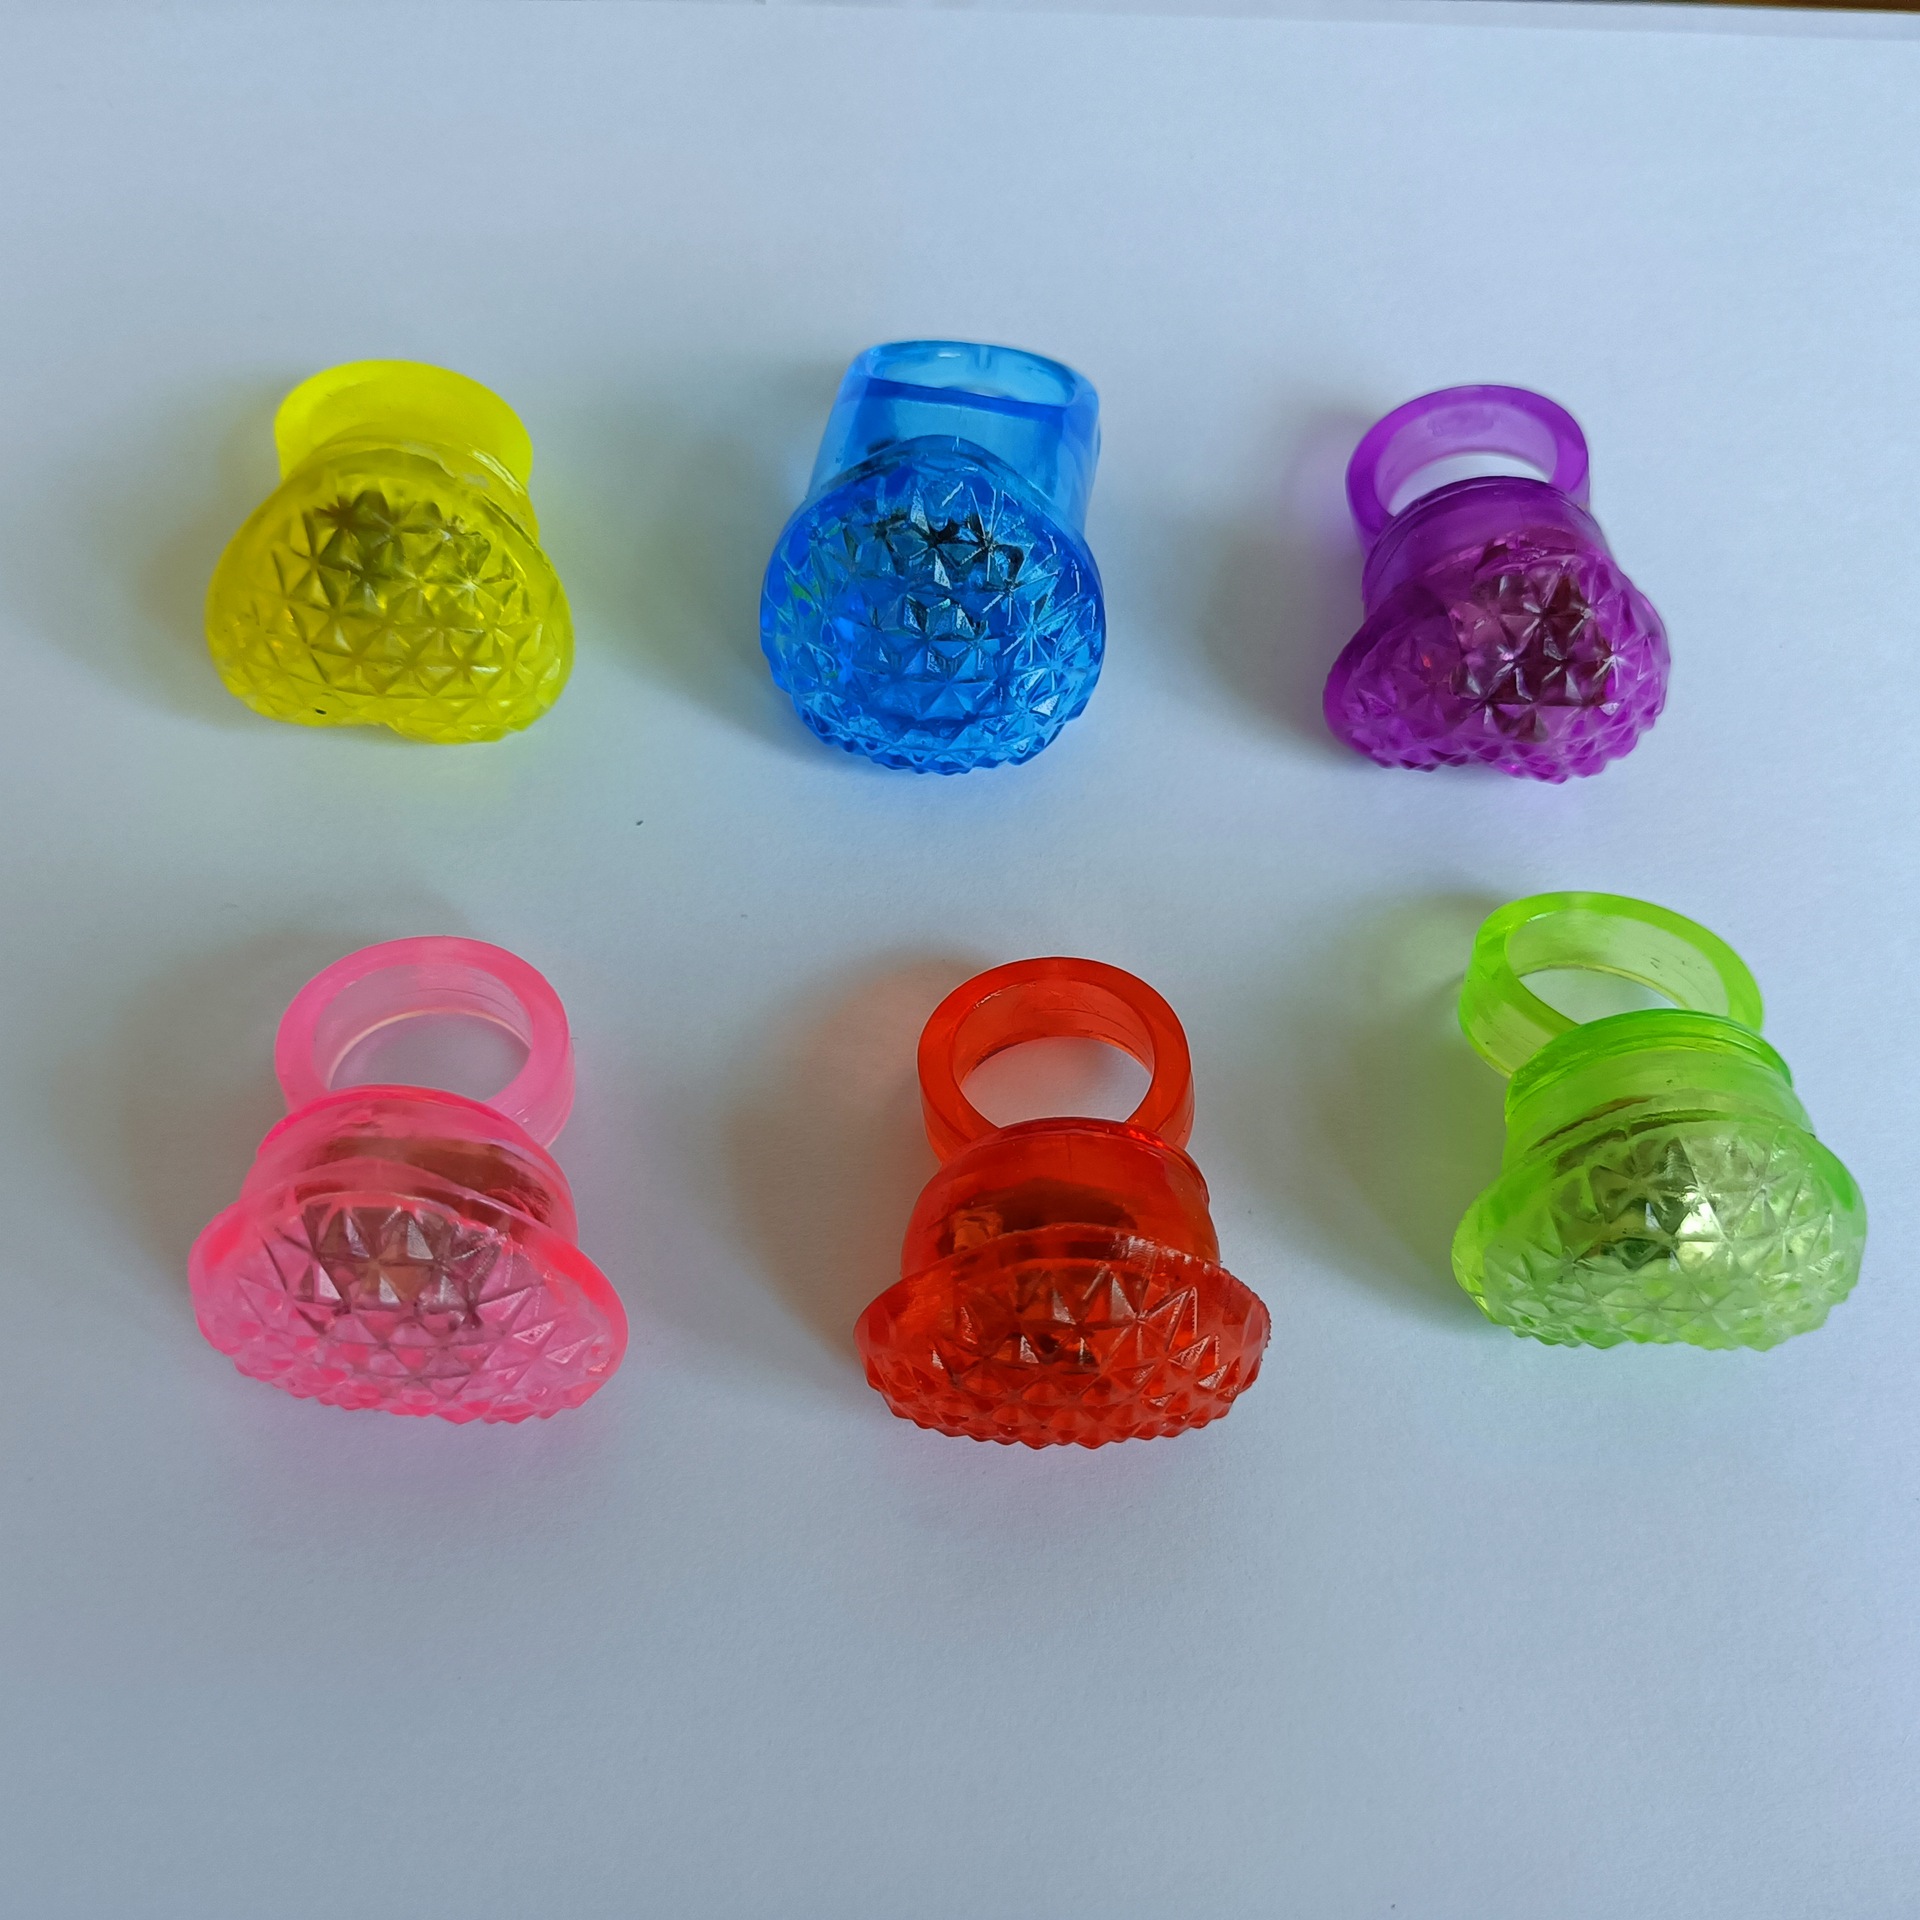 LED Finger Lamp Finger Flashing Lights Night Market Stall Toys Children's Flashing Soft Rubber Ring Soft Rubber Ring